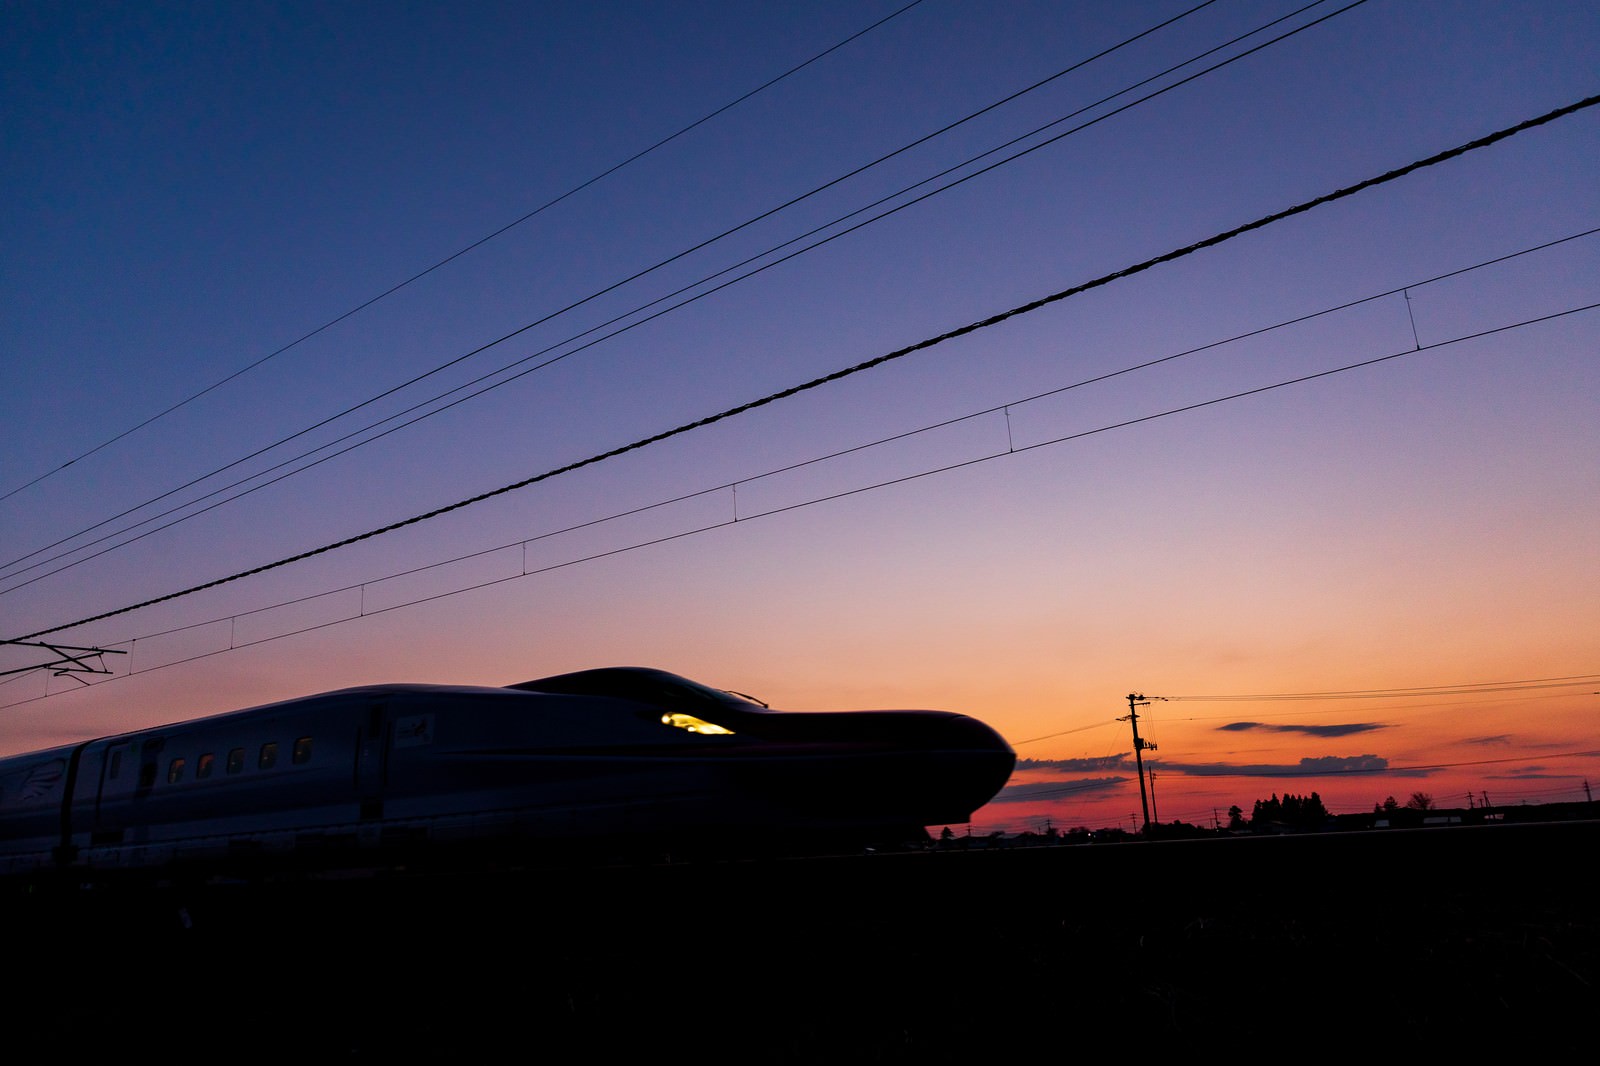 「夕焼け空と特別急行列車E6系こまちのシルエット」の写真